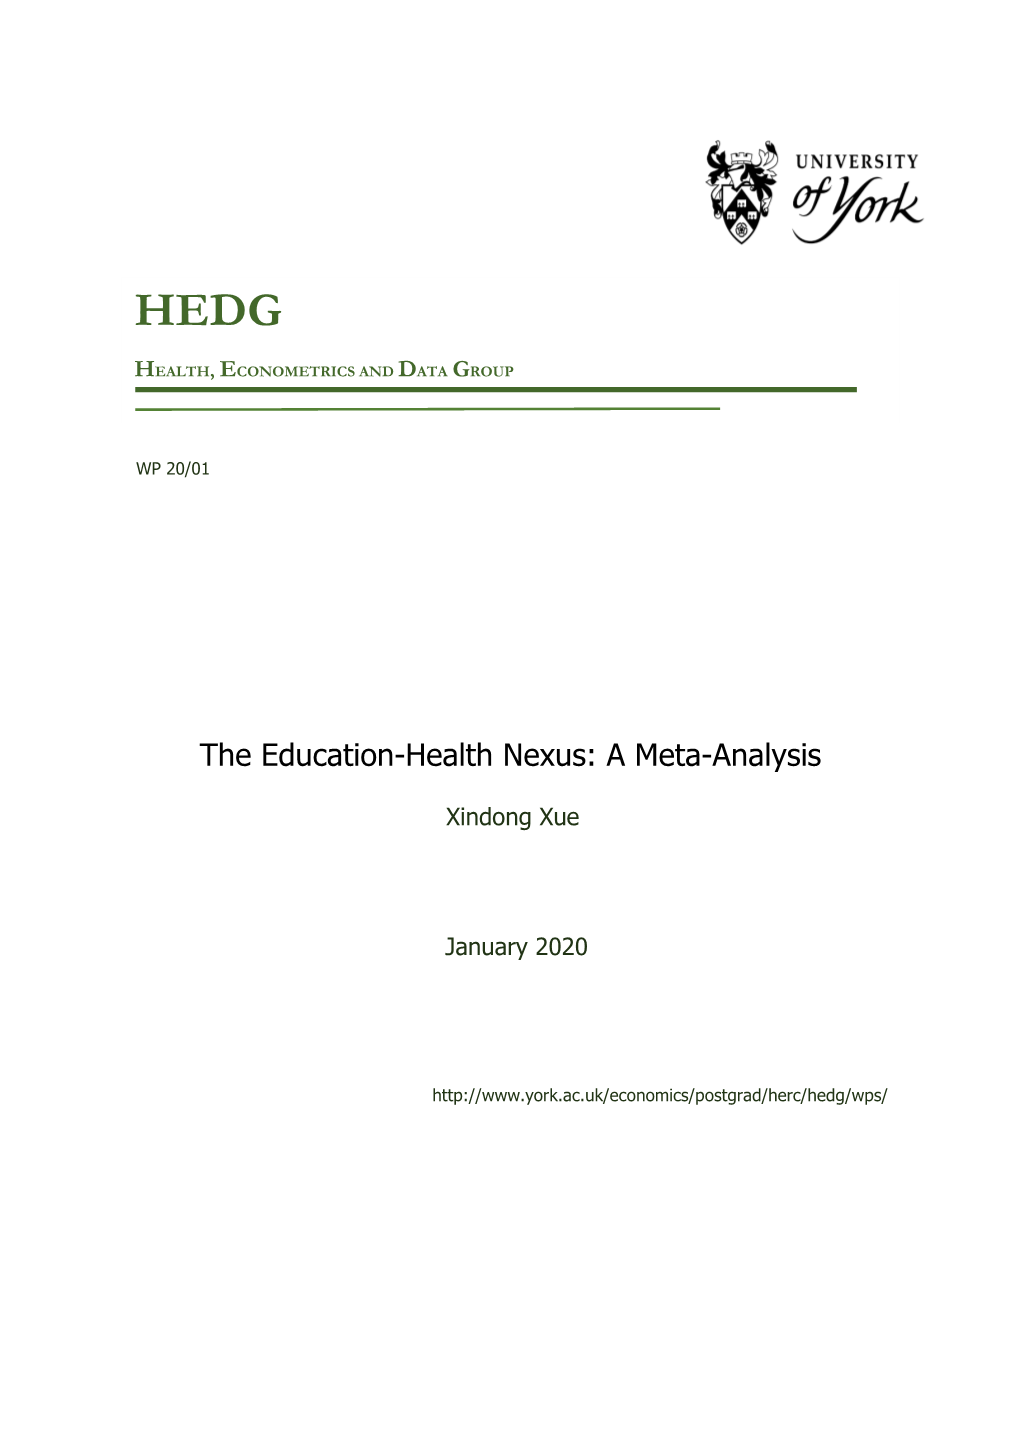 The Education-Health Nexus: a Meta-Analysis